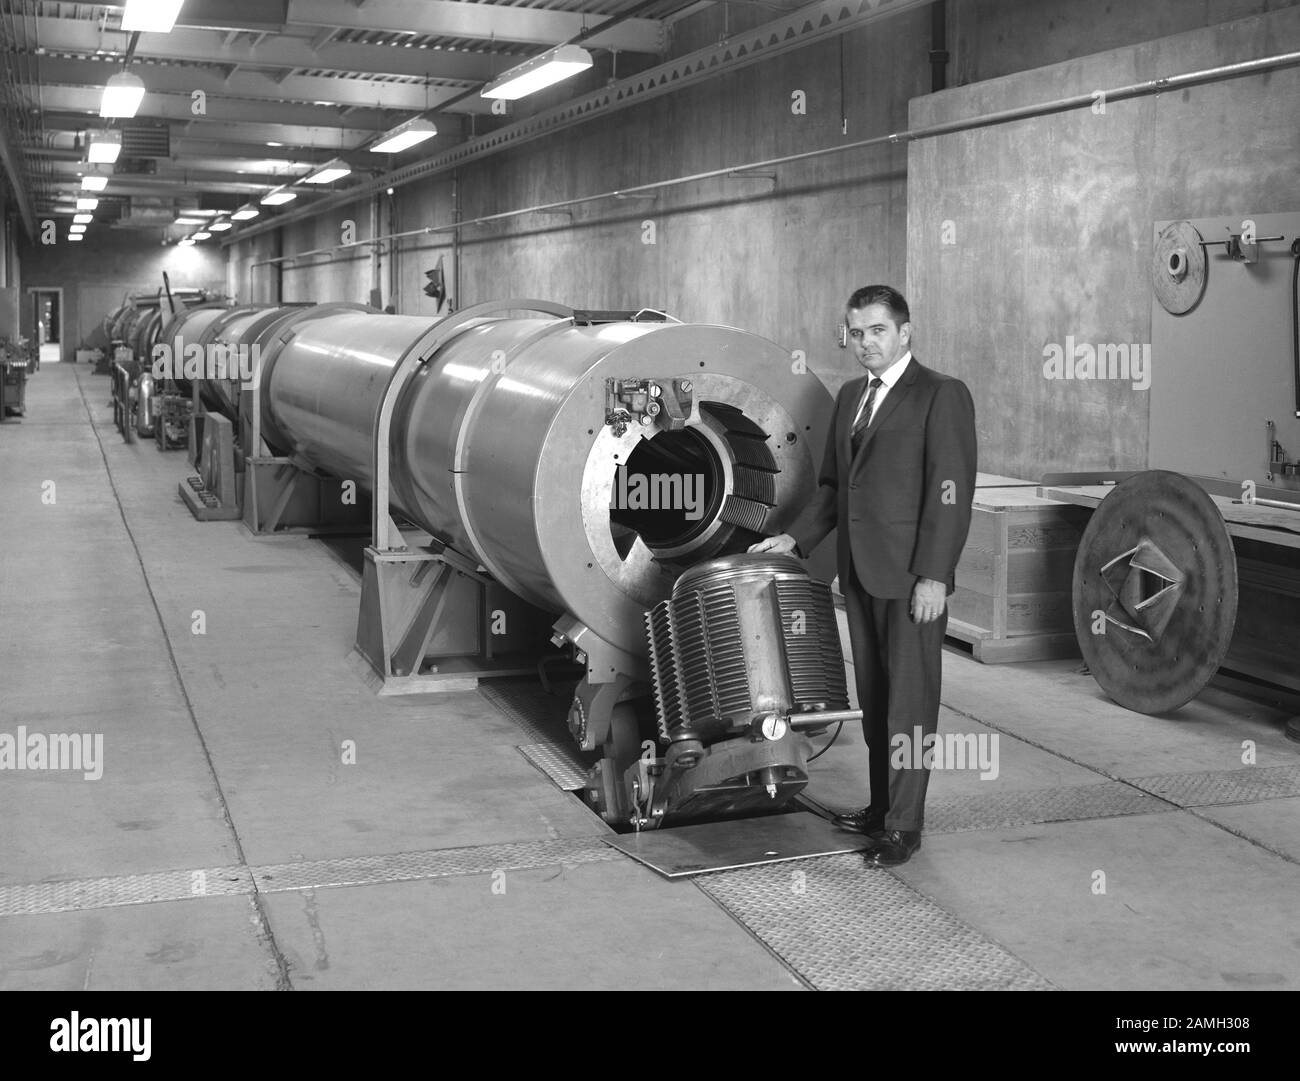 Thomas Canning, direttore della filiale, si trova accanto a un tubo per urti Hypersonic Free-Flight Aerodinamico, il Centro di ricerca Ames, Mountain View, California, Stati Uniti, 1966. Immagine gentilmente concessa dalla NASA. () Foto Stock